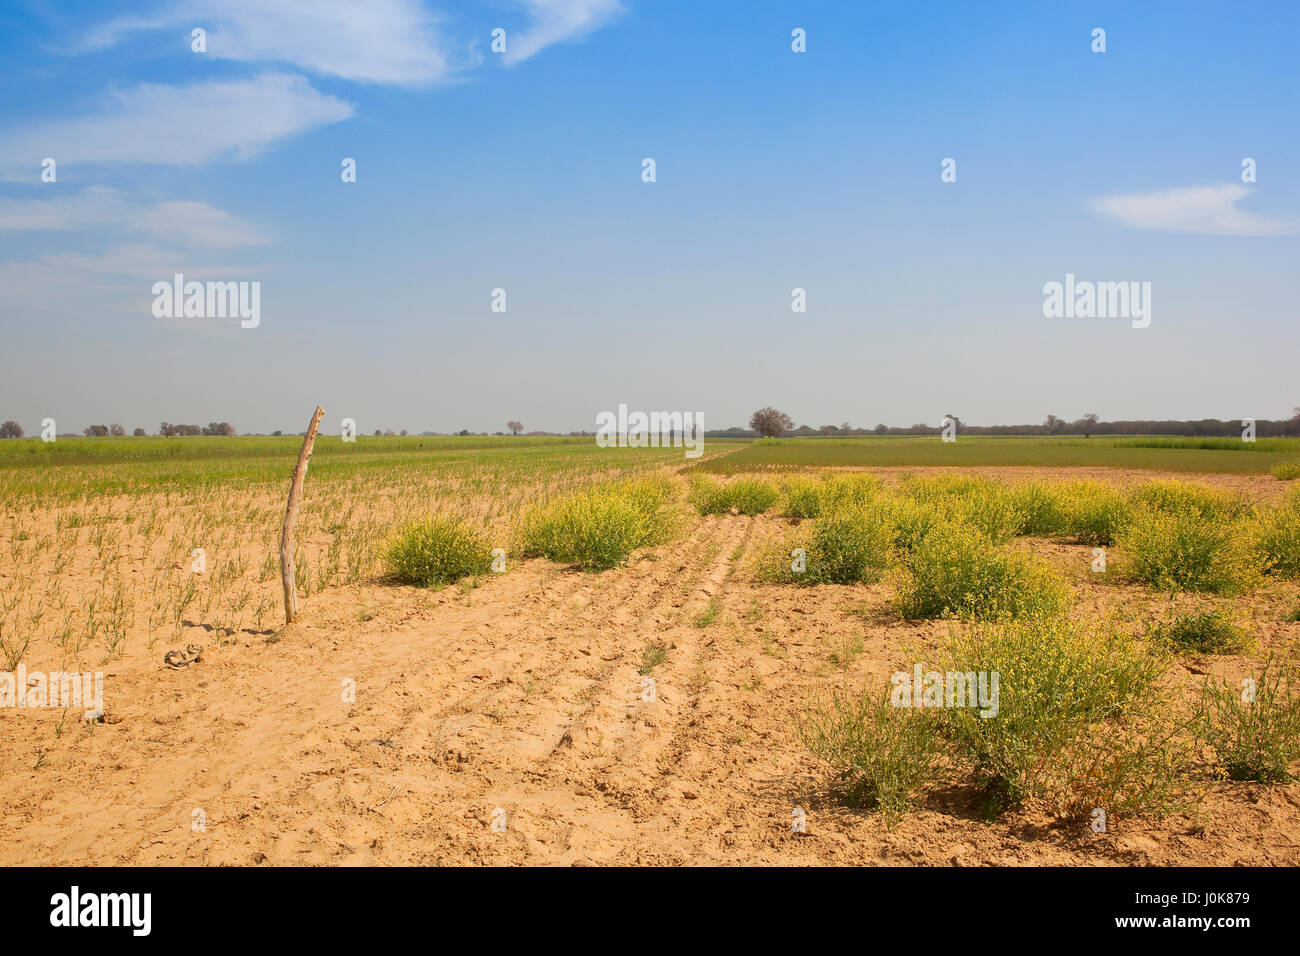 eine sandige Agrarlandschaft in Rajasthan Indien mit Küken Erbse und Senf Kulturen in der Nähe von Akazien bei blau bewölktem Himmel im Frühling Stockfoto